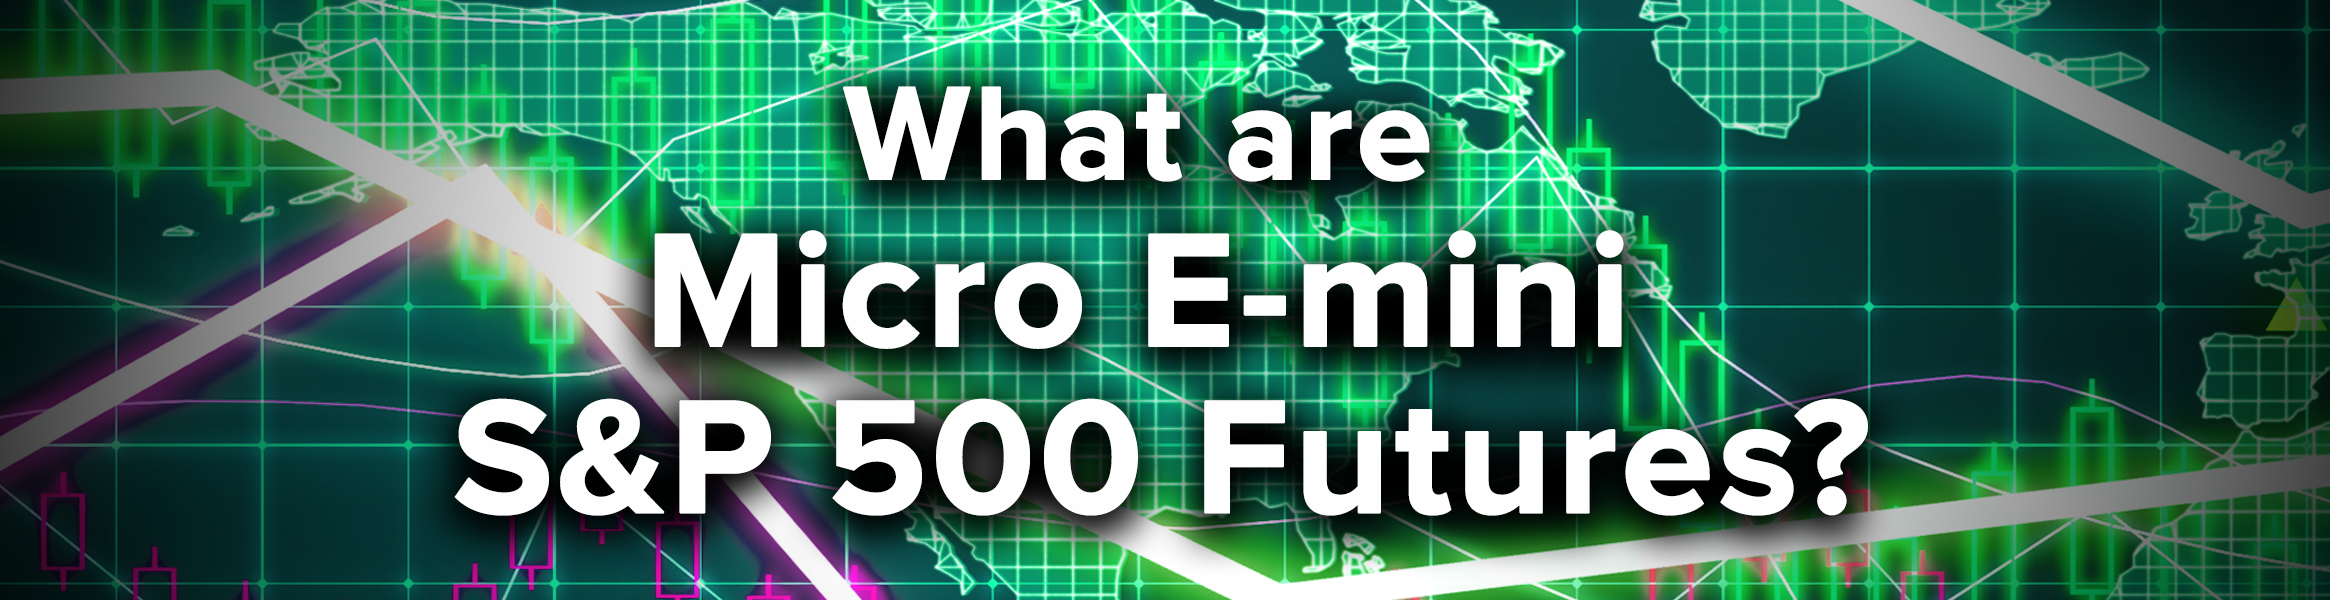 Micro e-mini S&P 500 futures